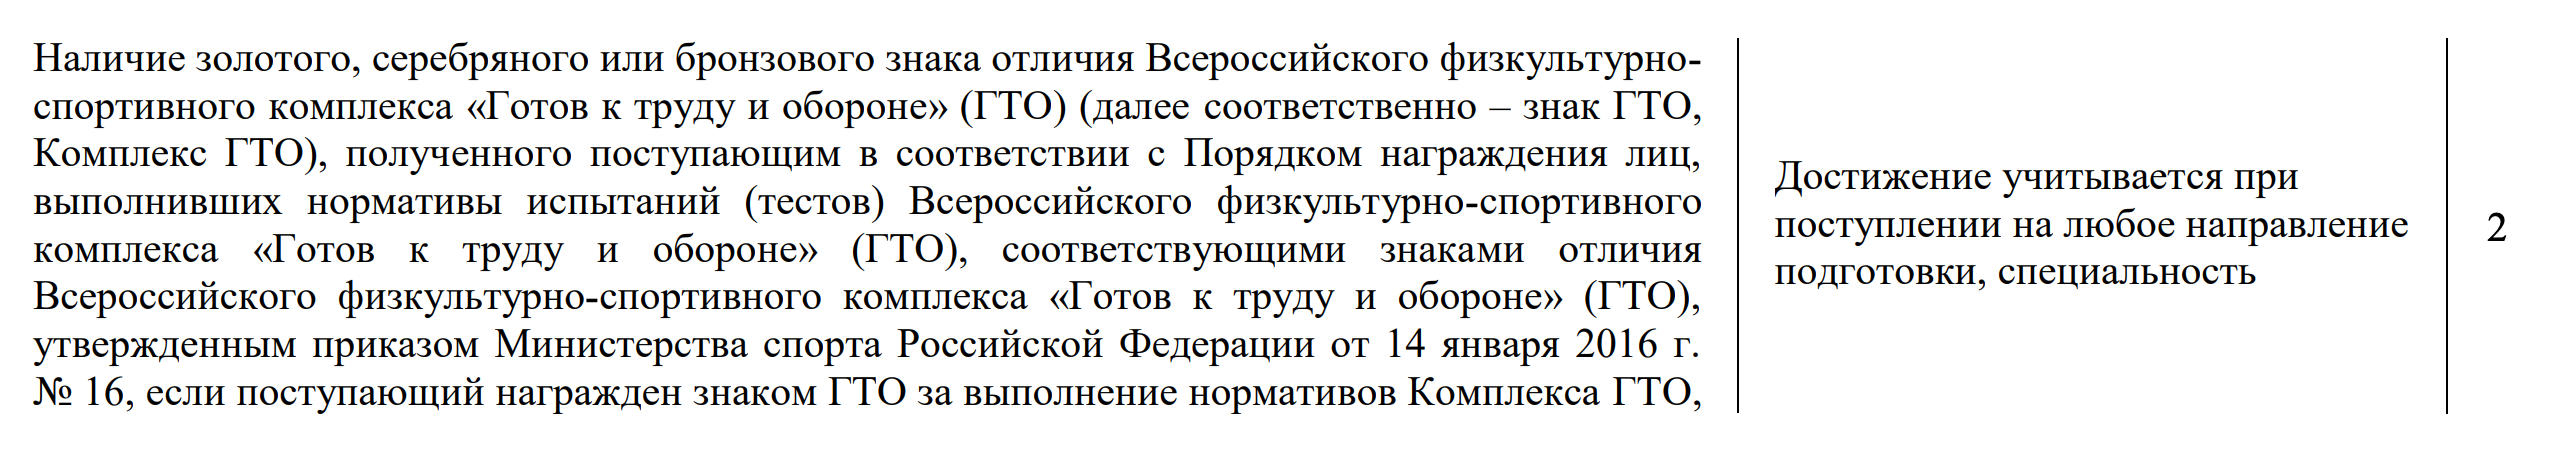 В МГППУ нет такого деления, он оценивает все значки на минимальные два балла. Источник: mgppu.ru